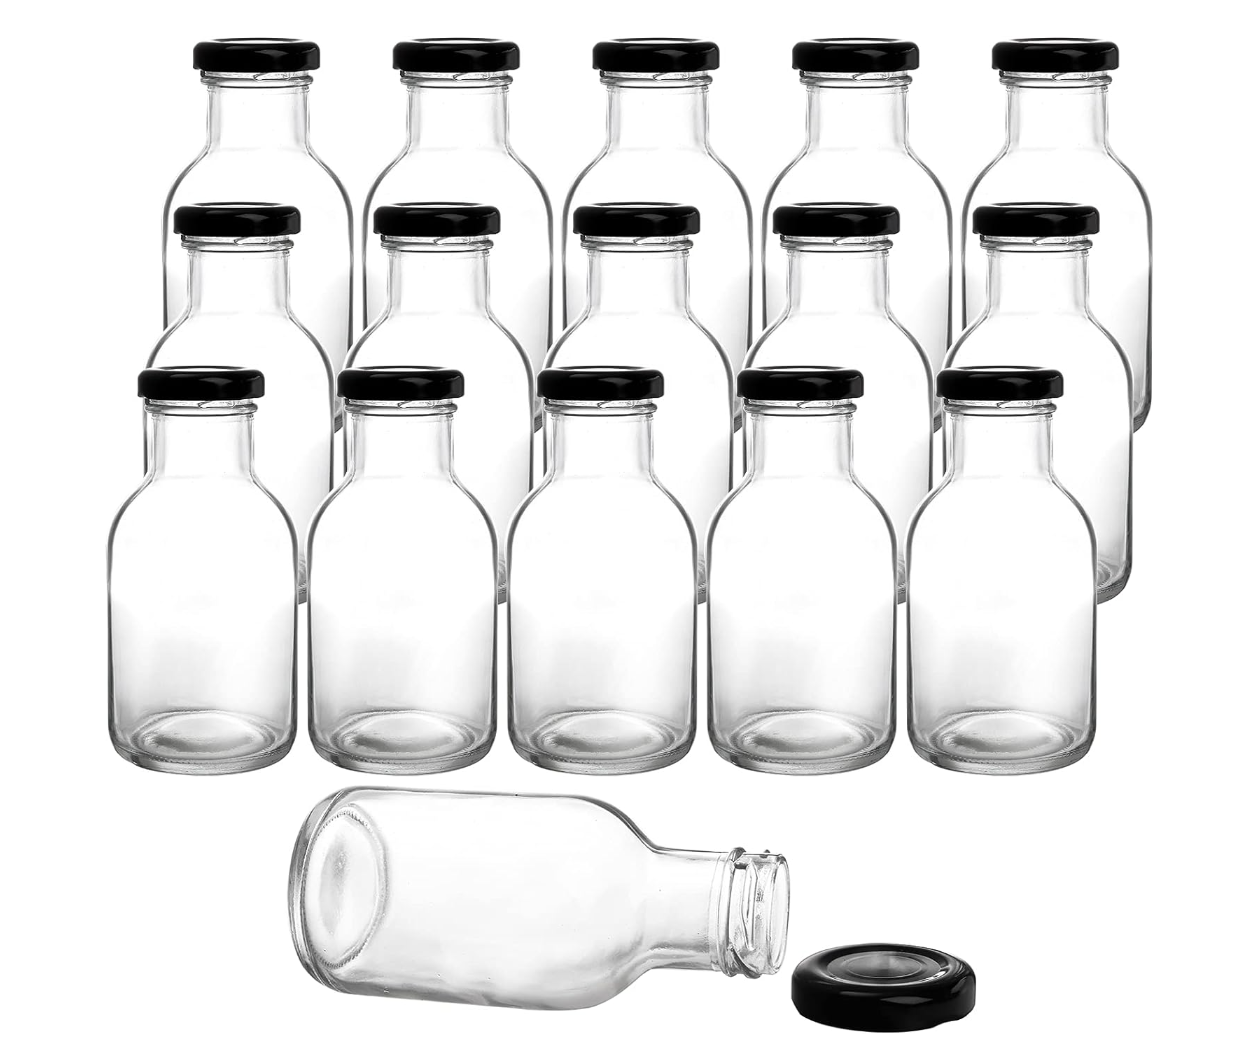 8oz glass bottles